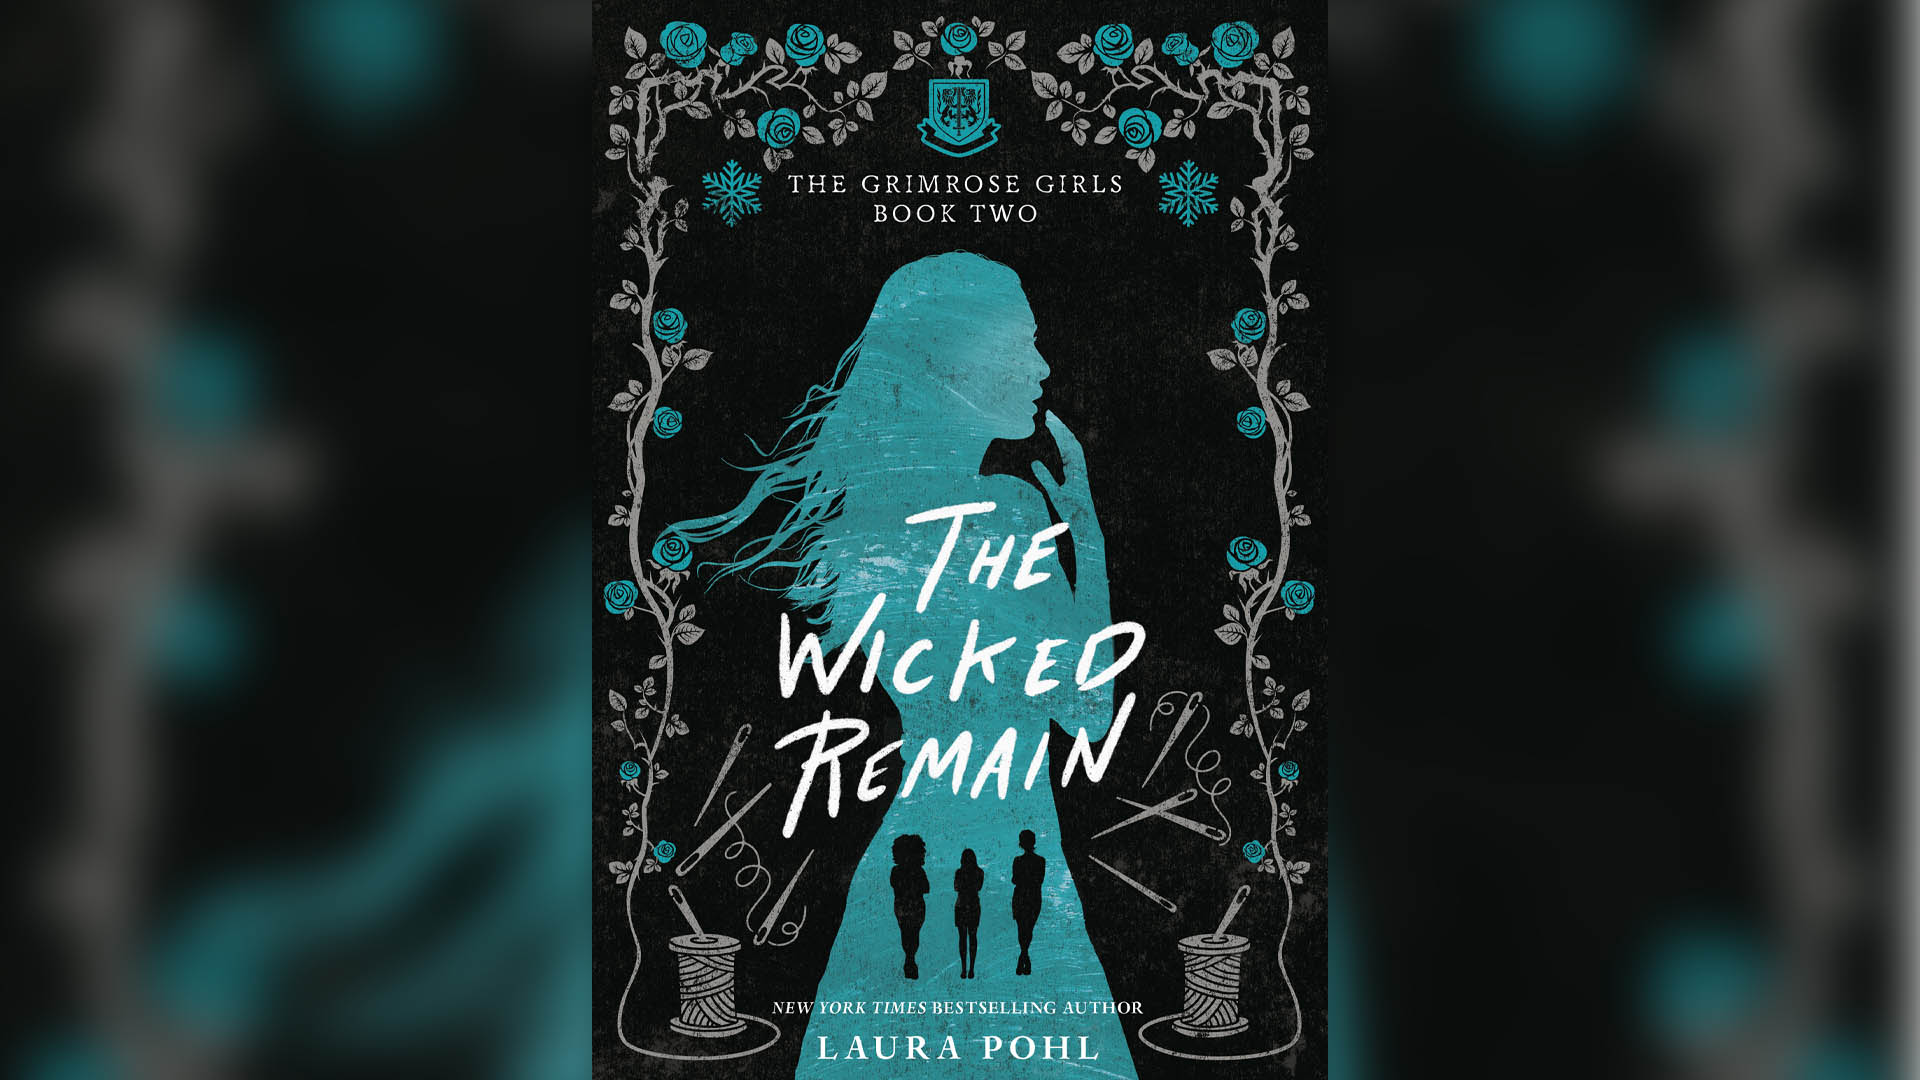 Aunque todavía no se editó en español, Laura Pohl ya publicó la segunda parte de "Las chicas Grimrose", titulada "The wicked remain". 